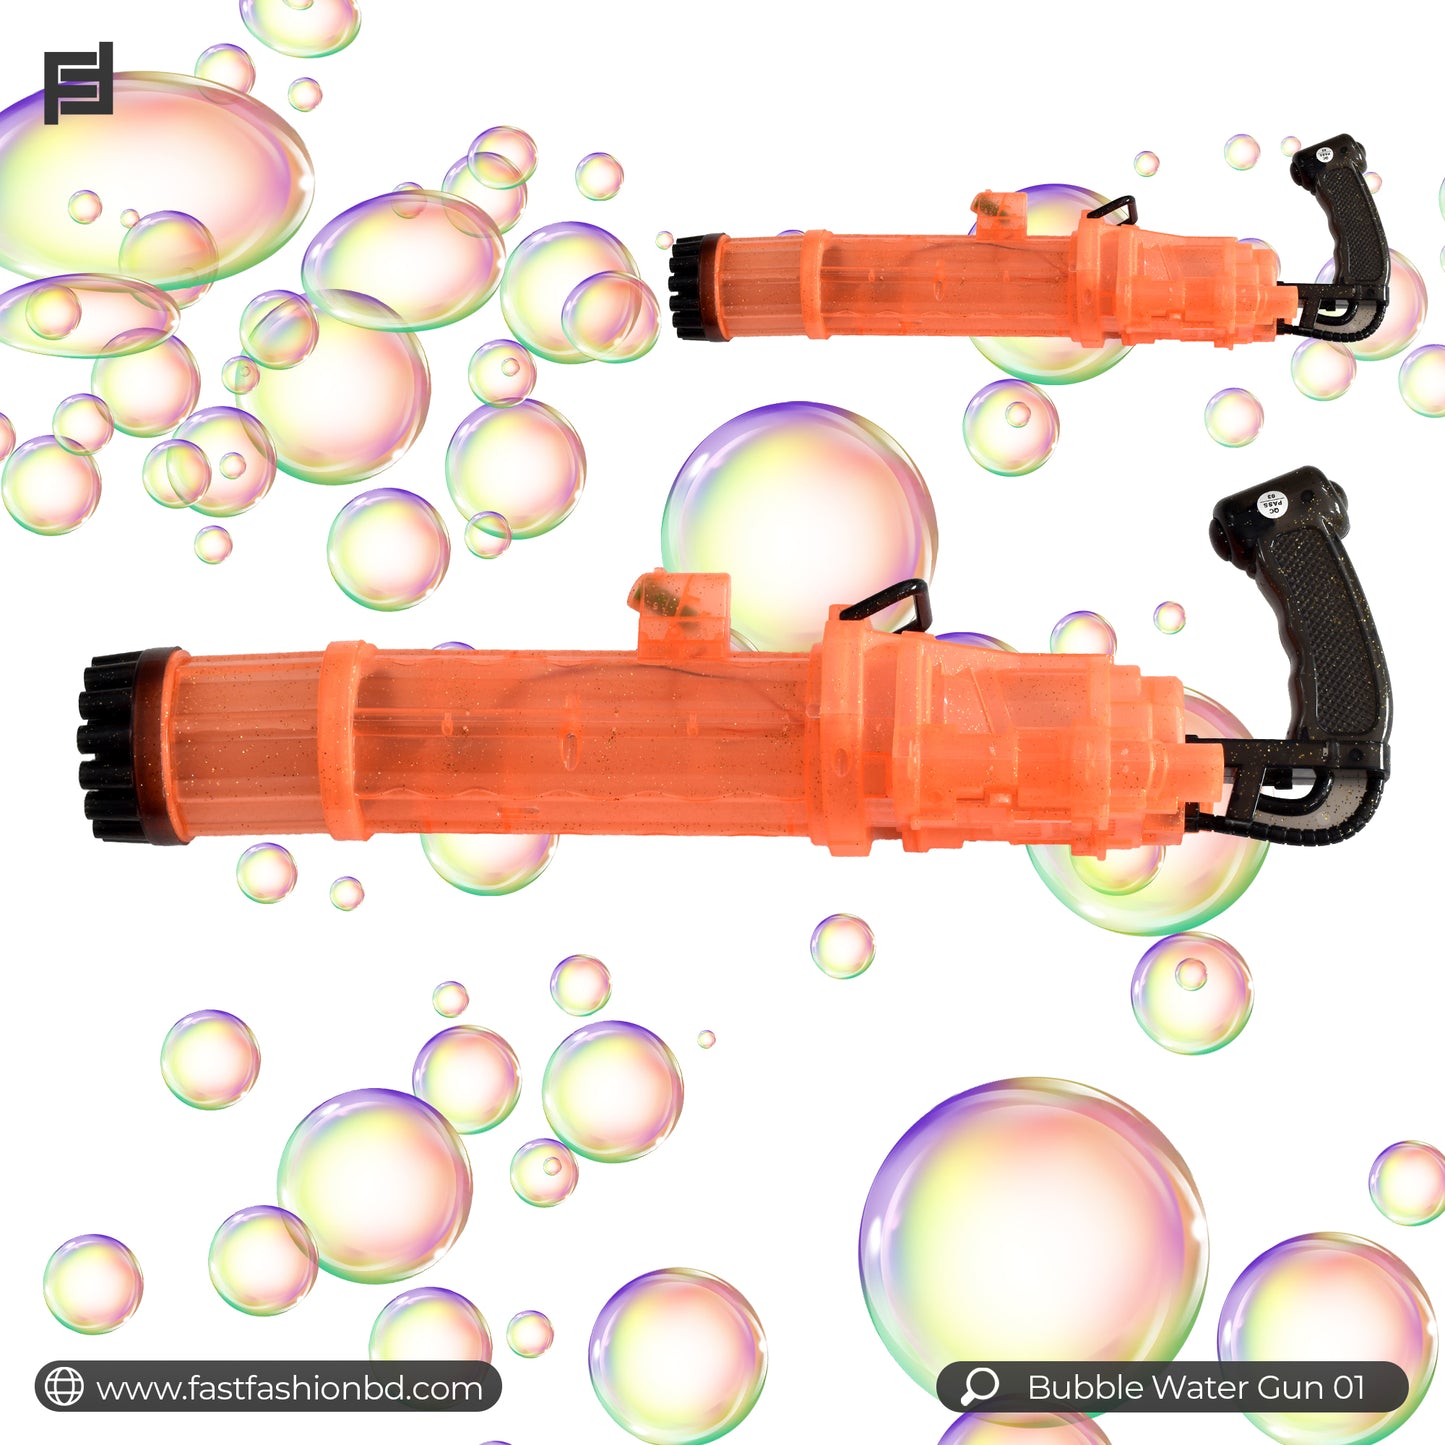 Bubble Gun for Kids - Bubble Gun 01